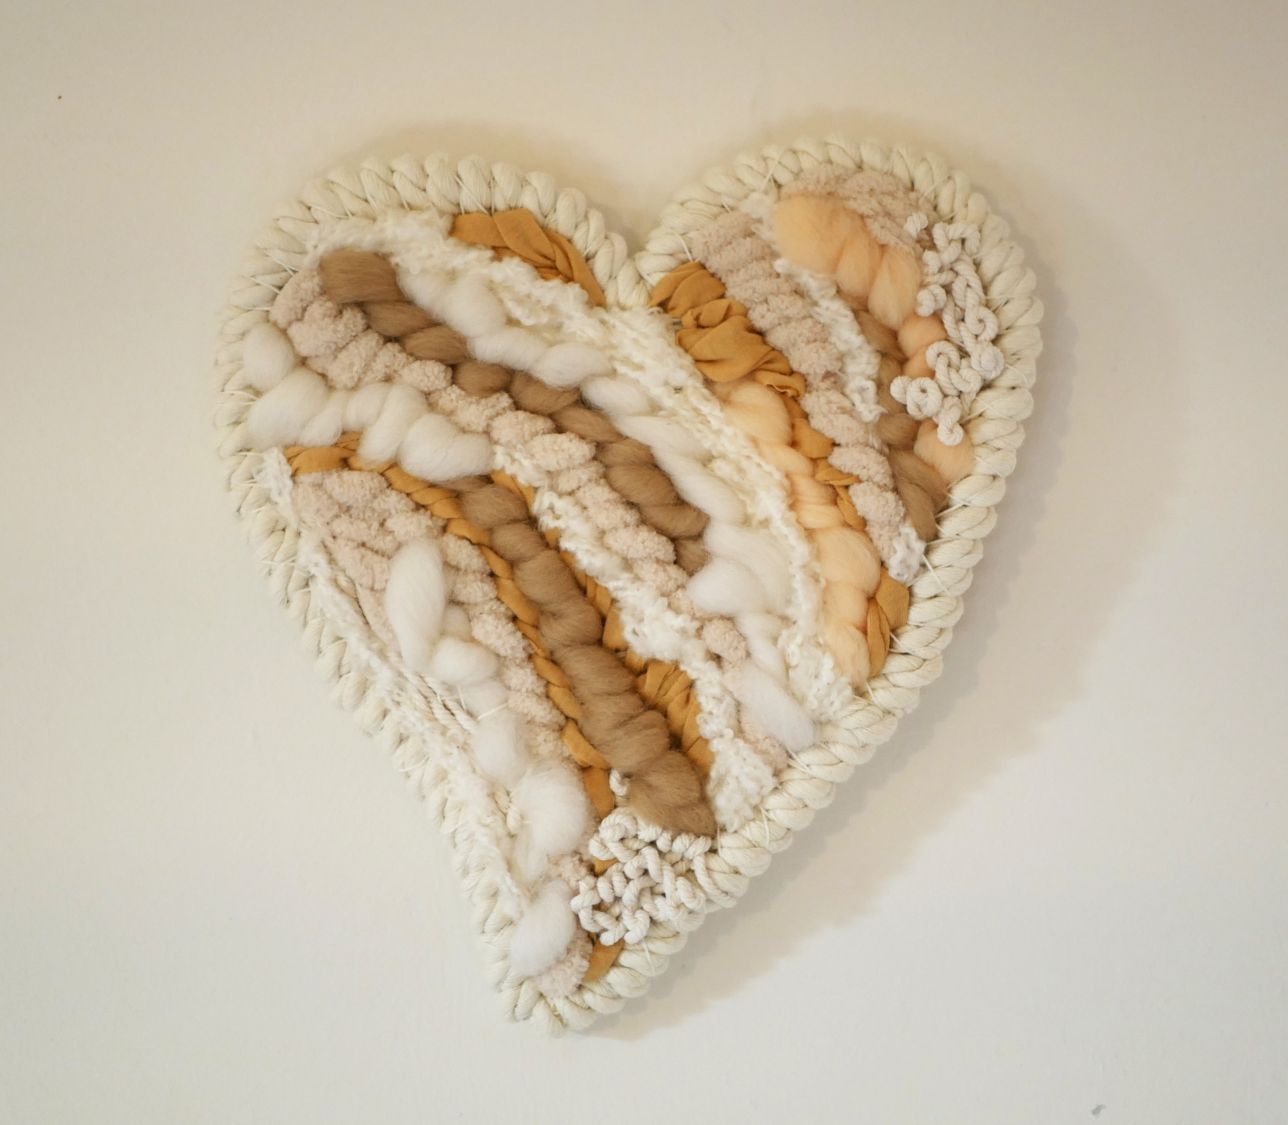 Décoration coeur en tissage de laines blanches et beiges